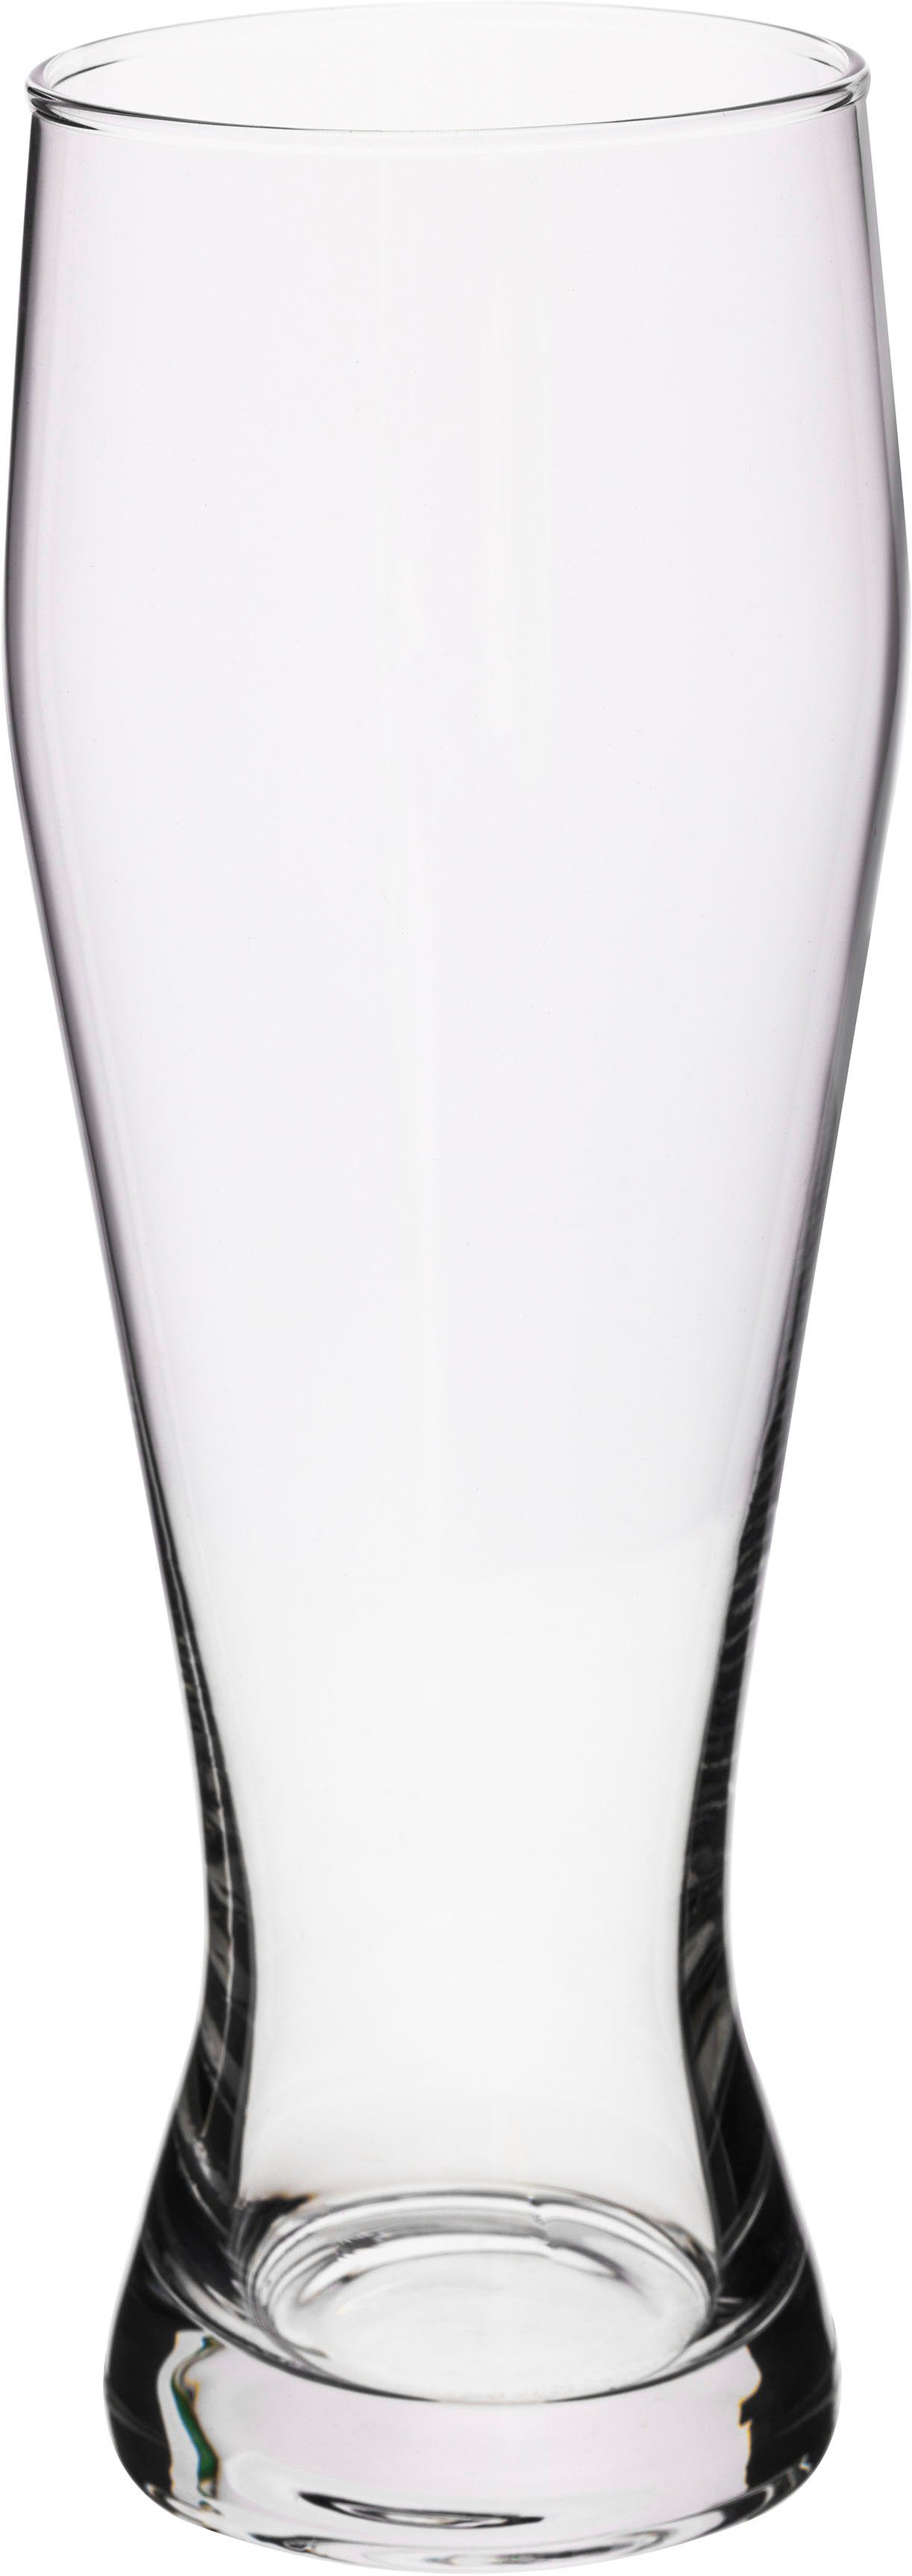 van Well Bierglas Weizenbierglas, Glas, 0,3 L, geeicht, spülmaschinenfest, Gastronomiequalität, 6-tlg.